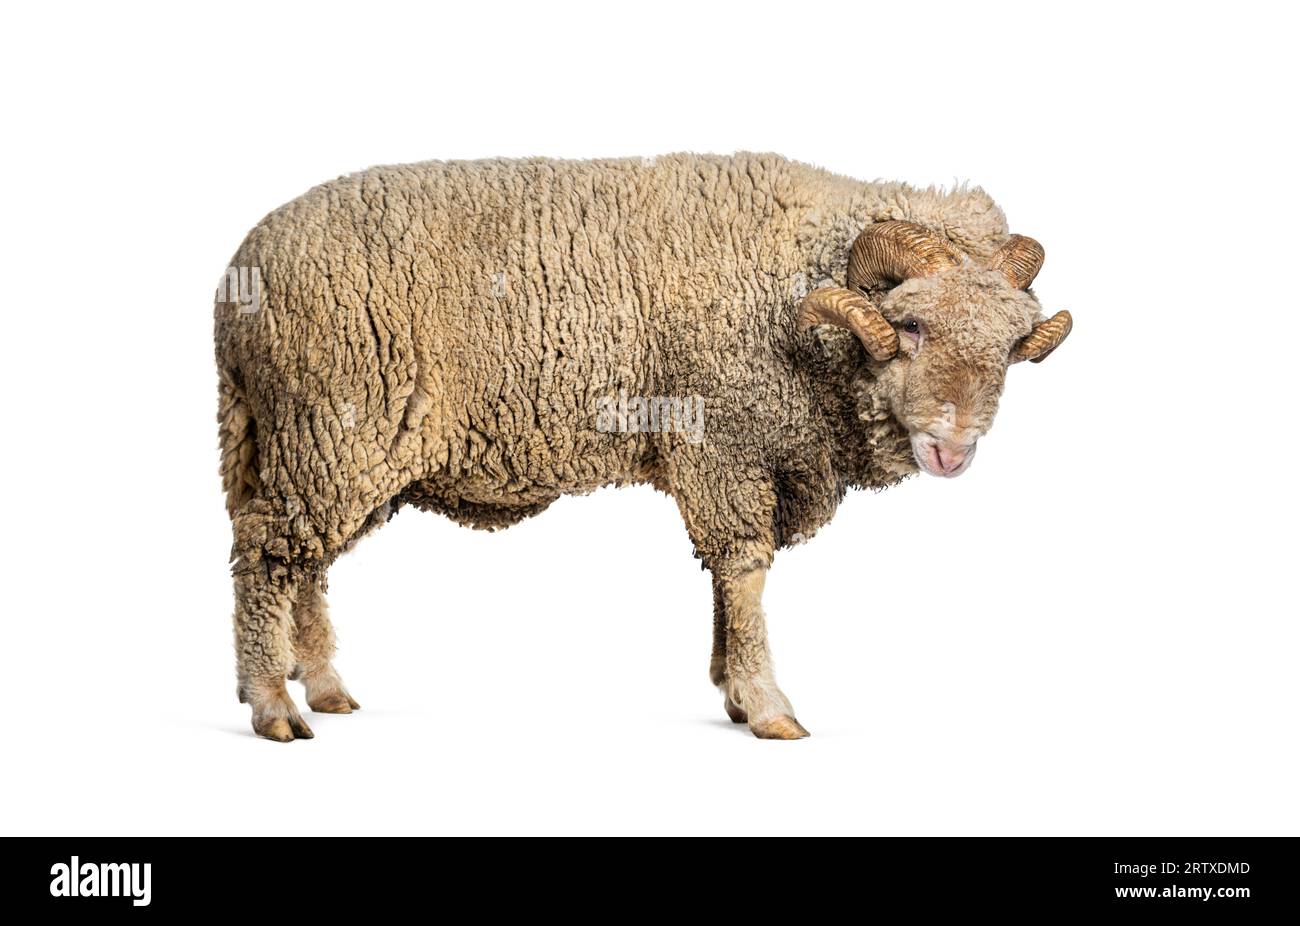 Mouton RAM Sopravissana avec de grosses cornes, isolé sur blanc Banque D'Images